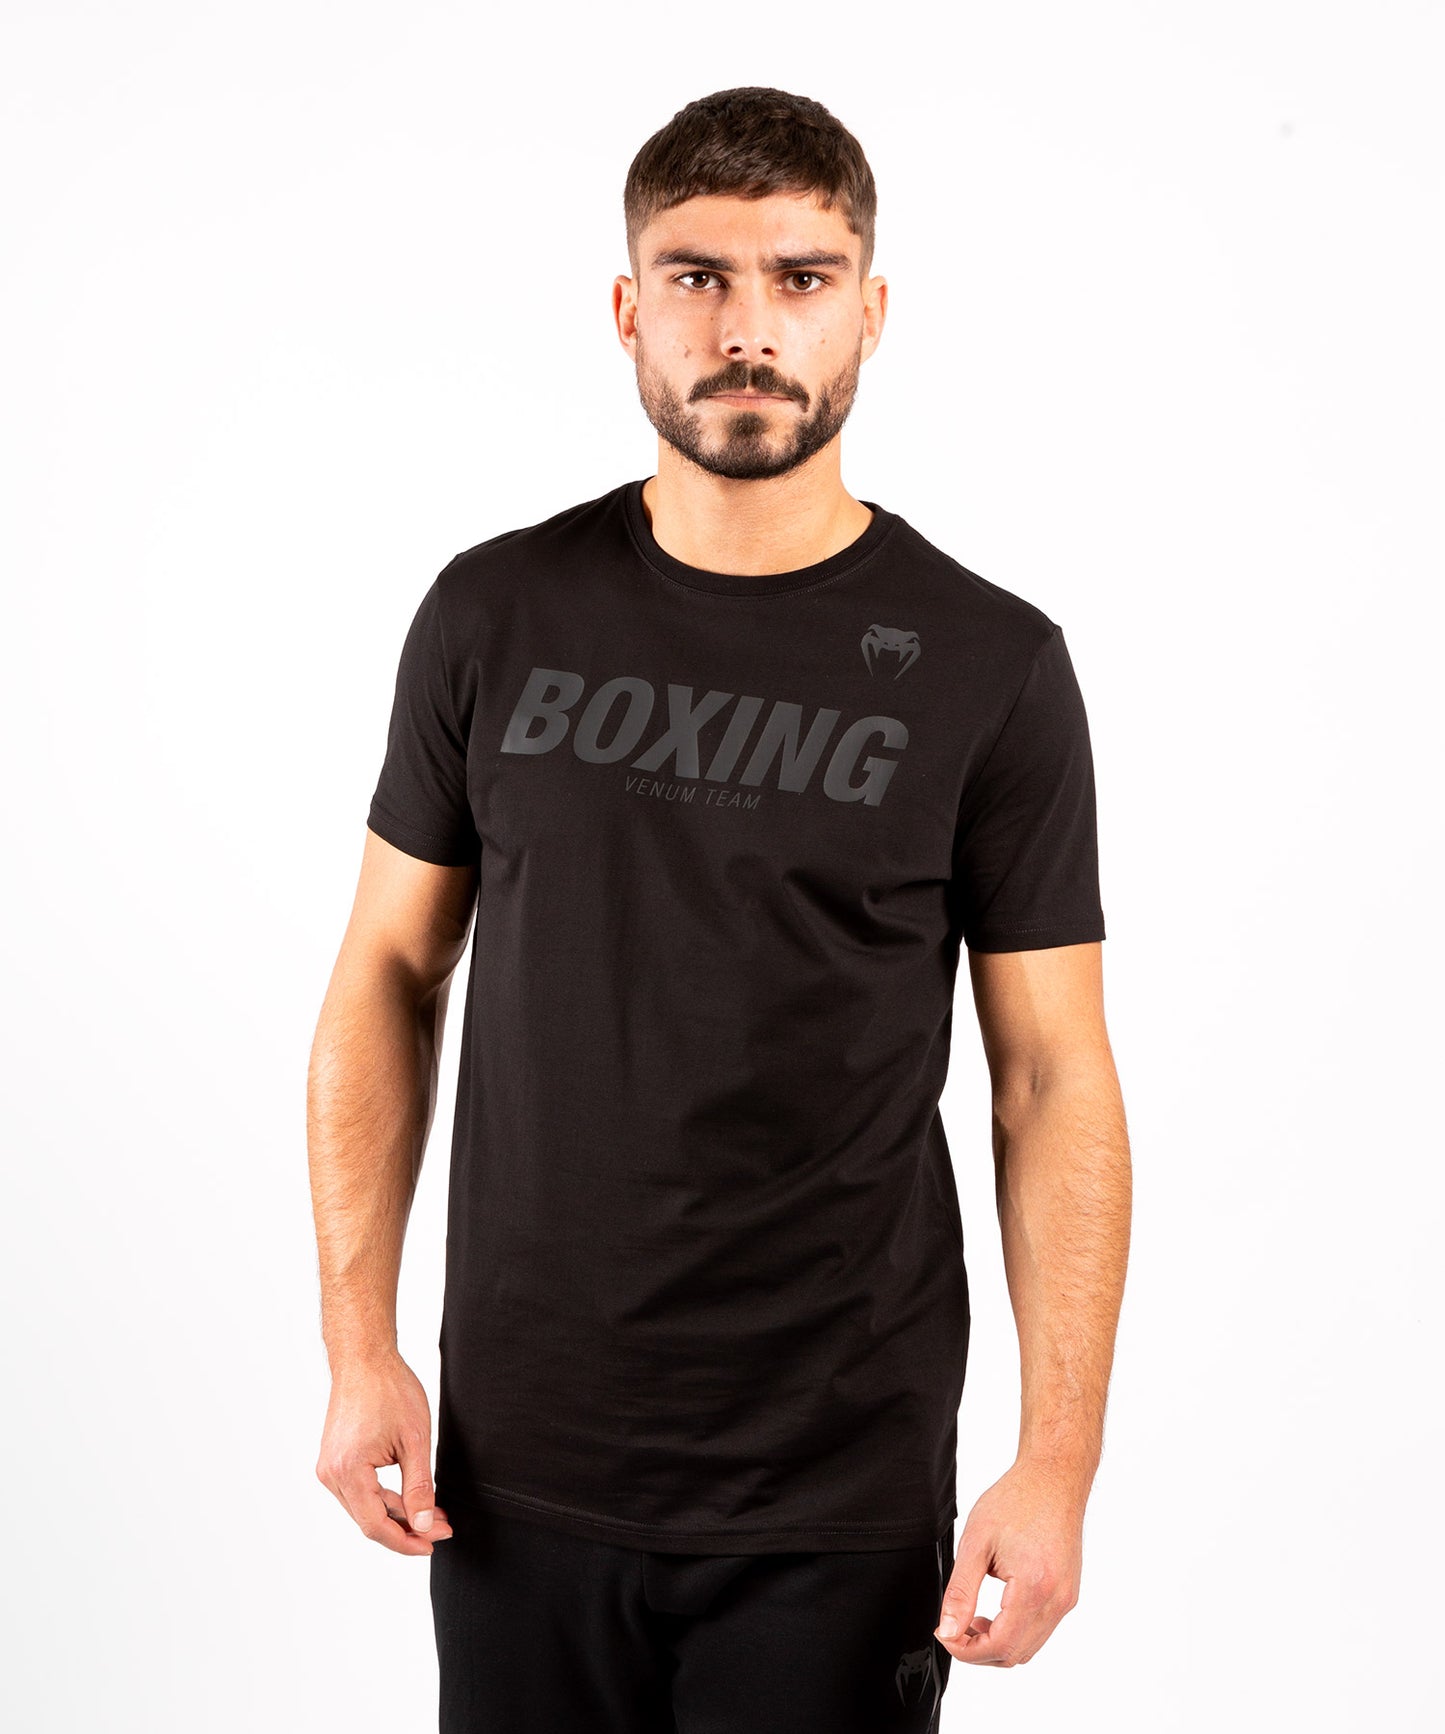 Camiseta Boxing VT de Venum - Negro/Mate